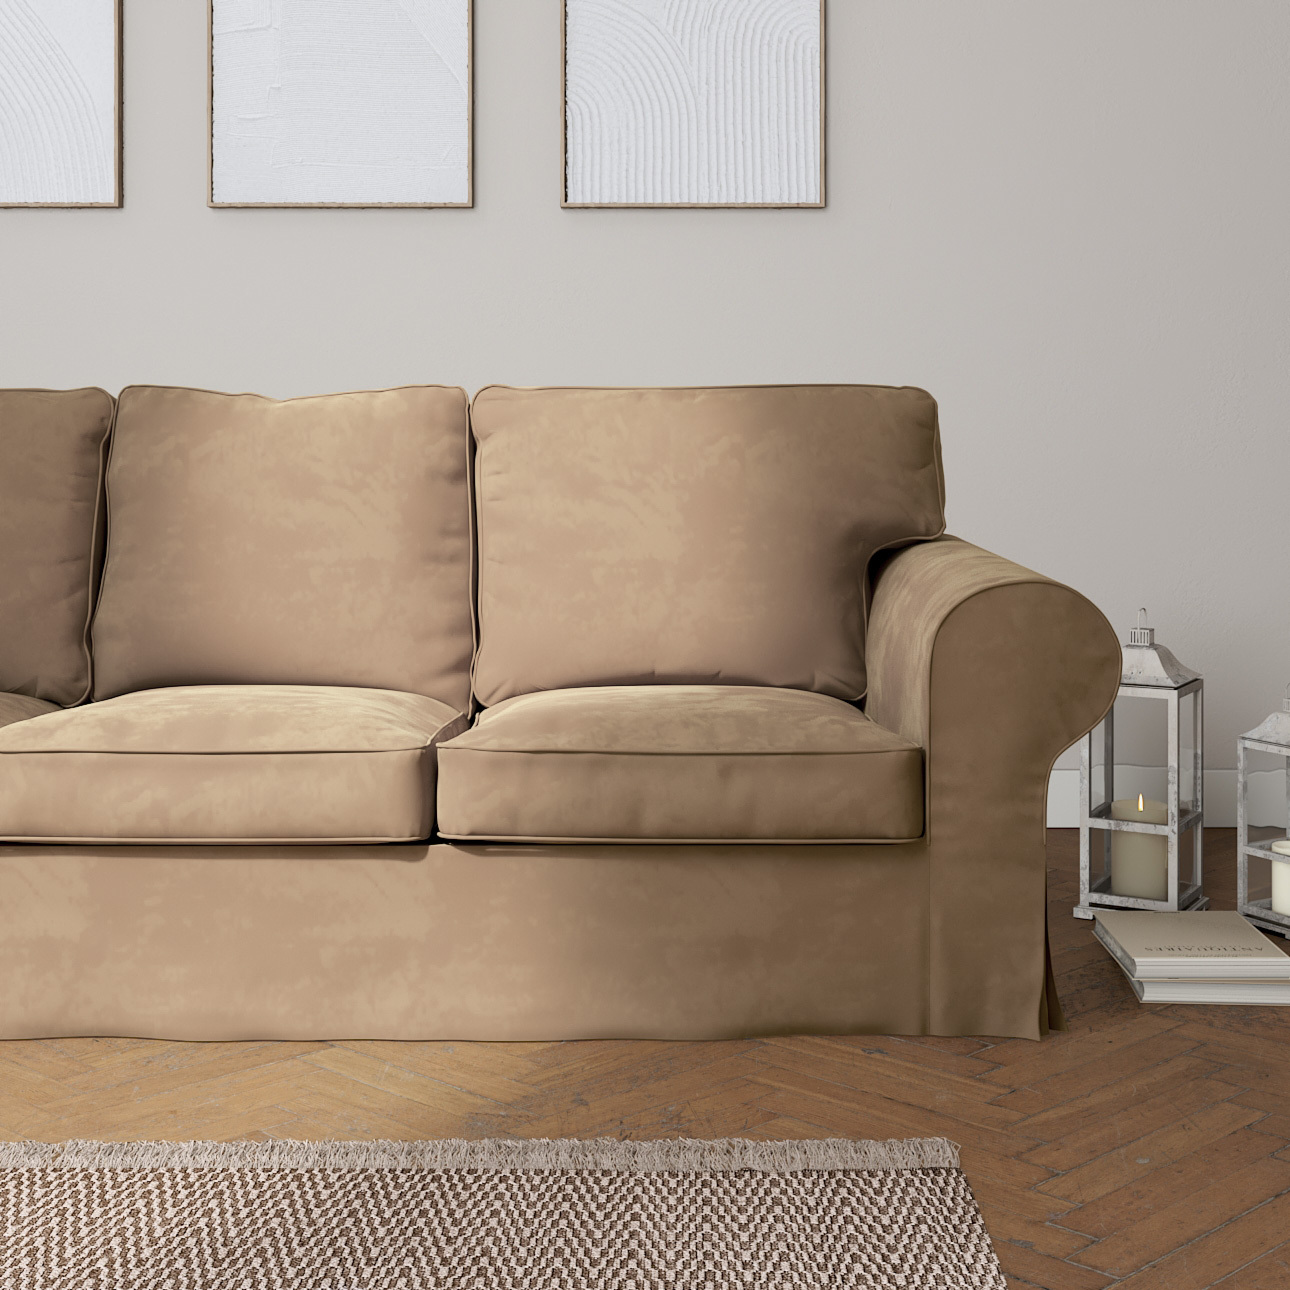 Bezug für Ektorp 3-Sitzer Sofa nicht ausklappbar, beige, Sofabezug für Ekto günstig online kaufen